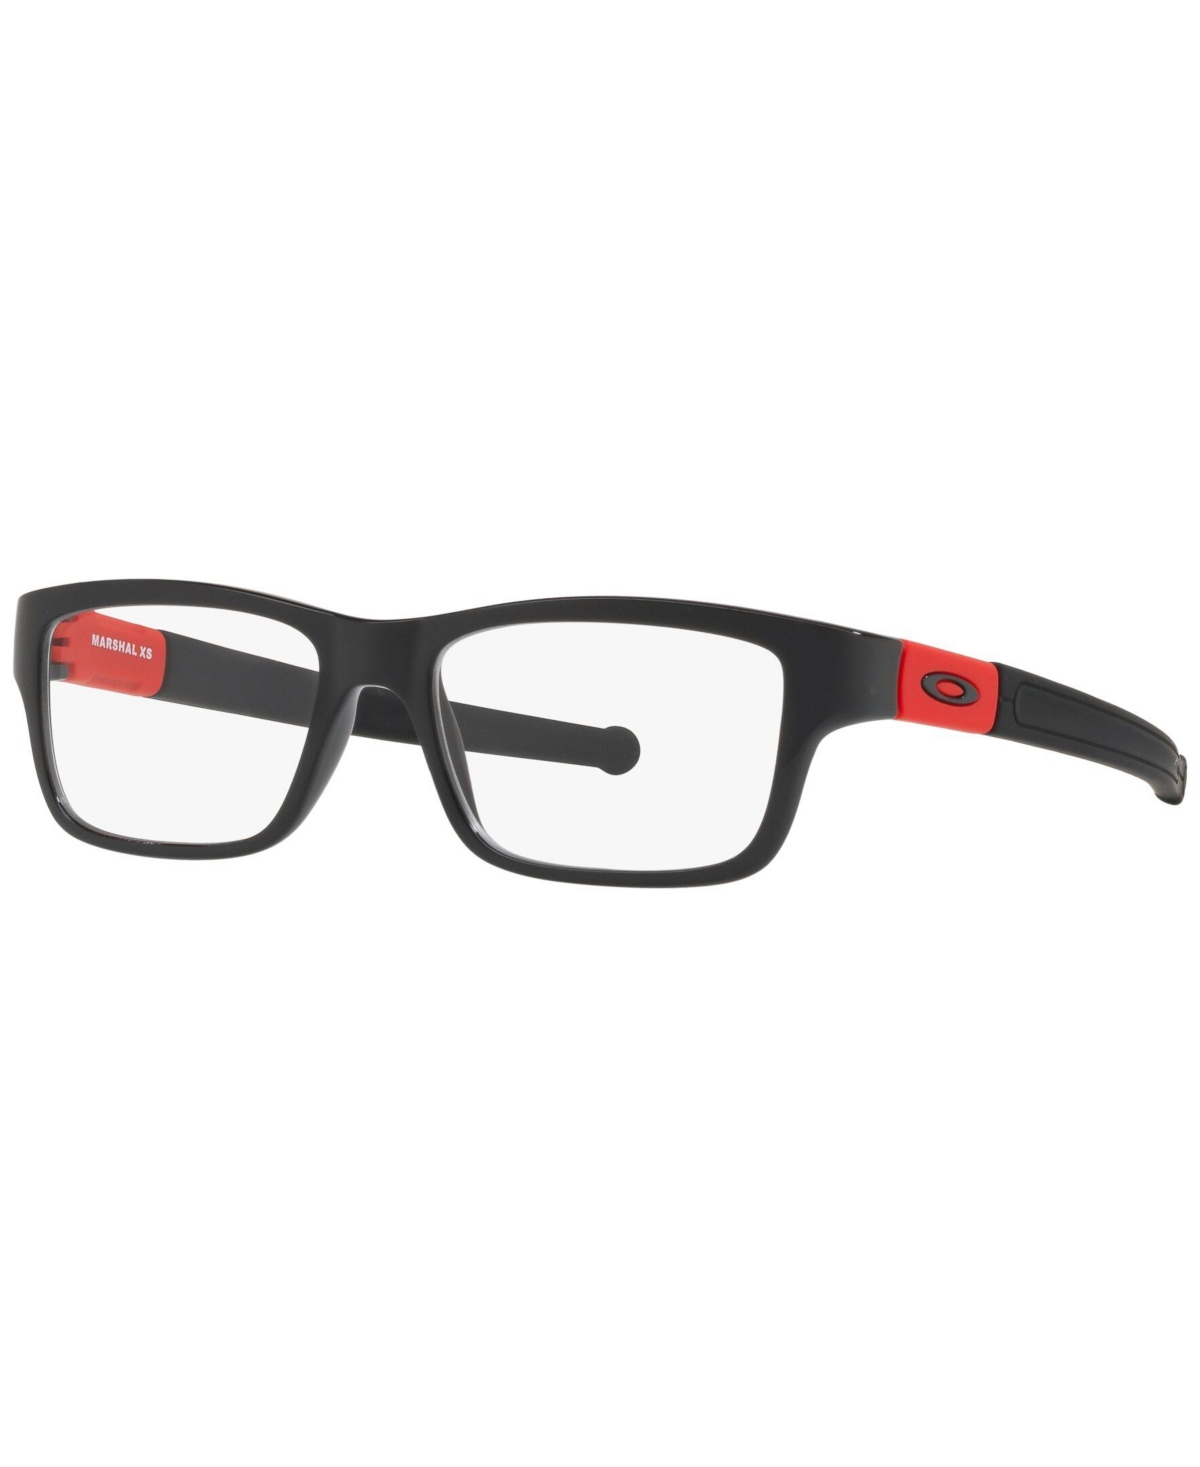 OY8005 Child Rectangle Eyeglasses - Black